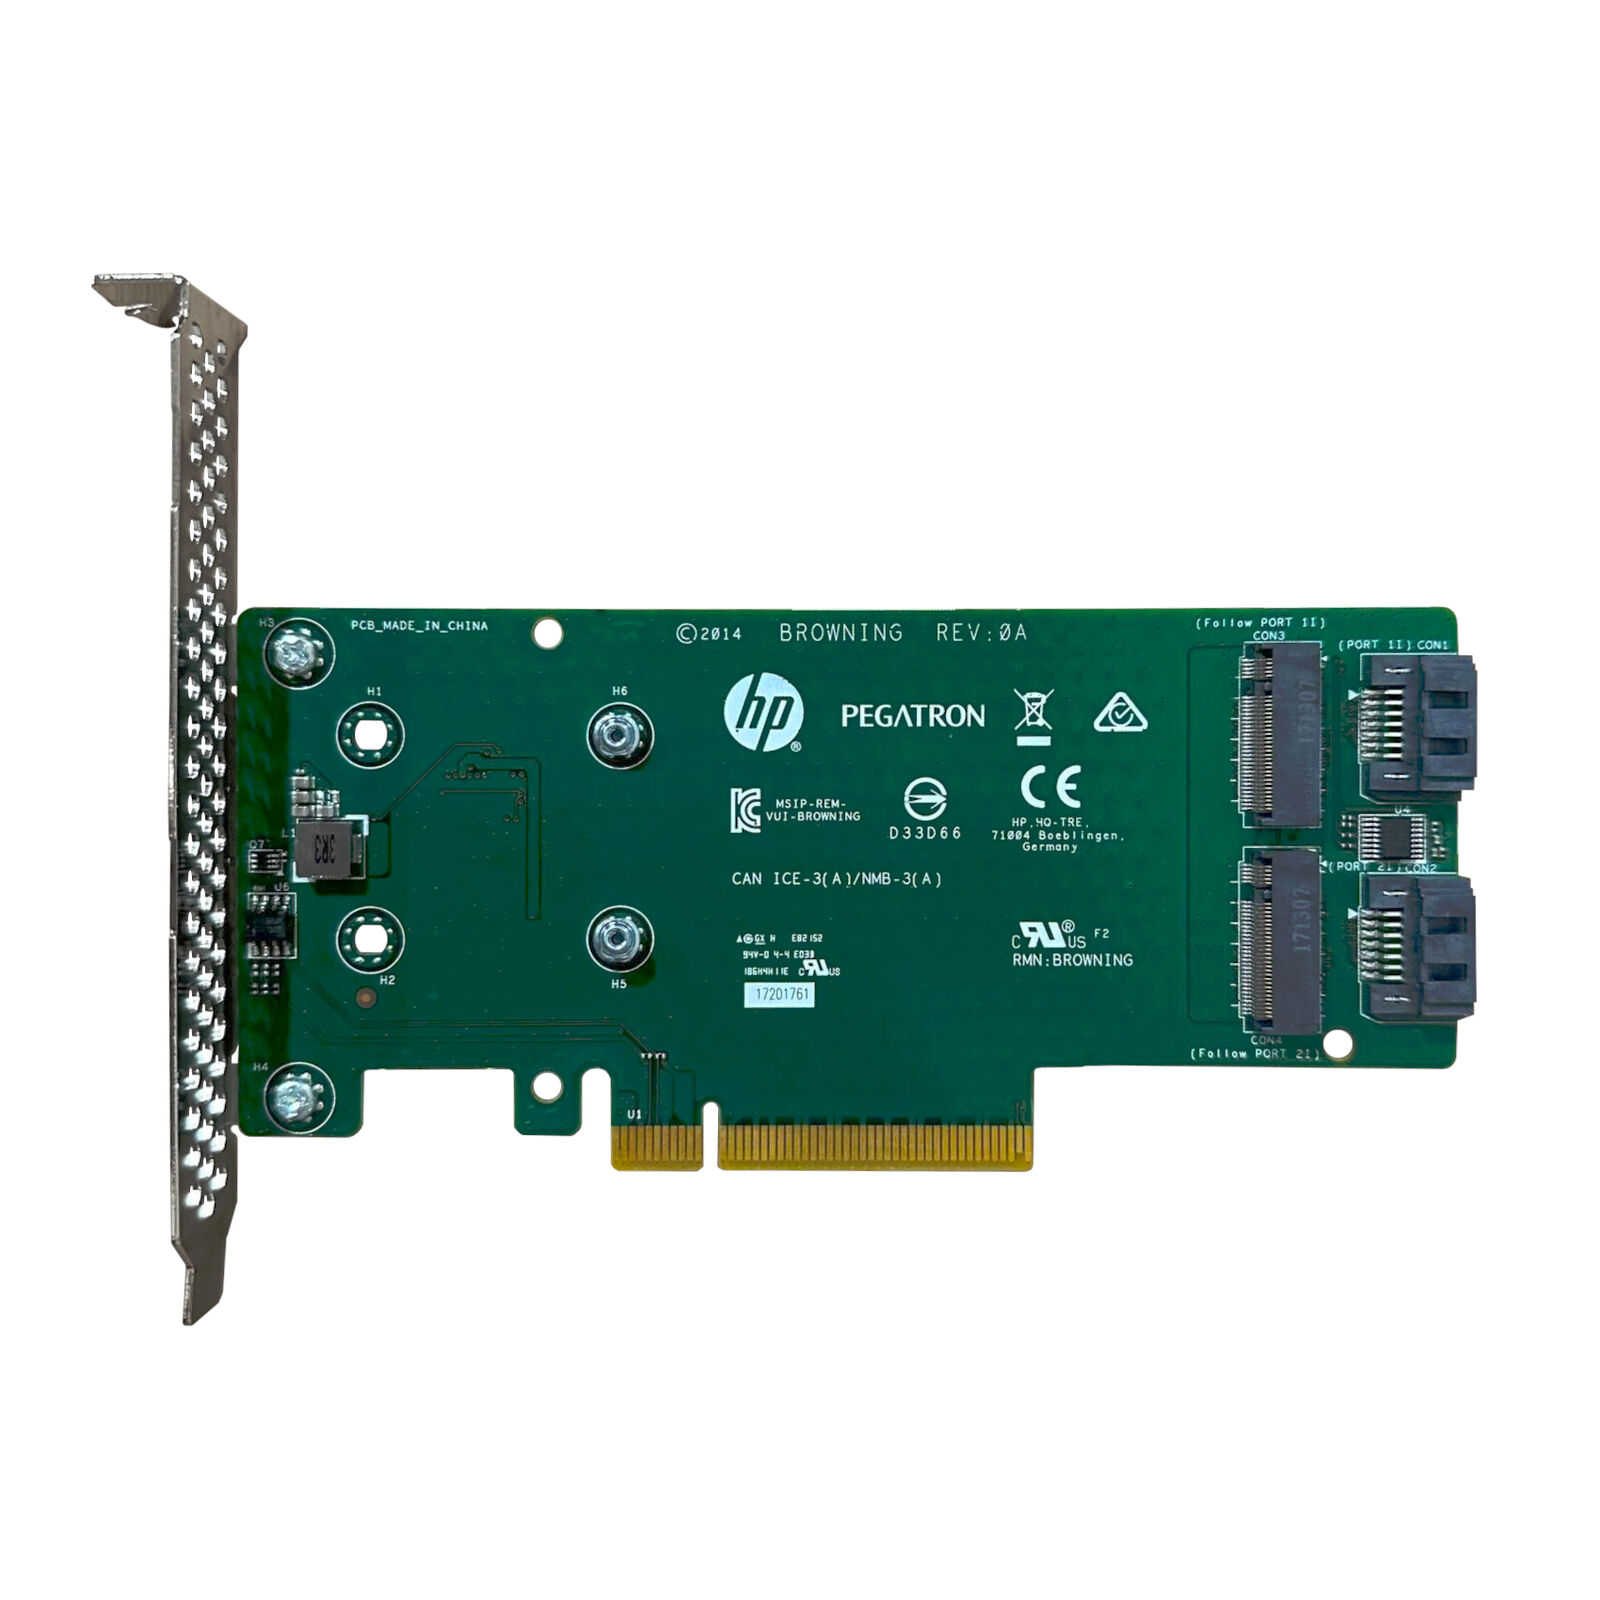 HP 759505-001 Dual SATA M.2 Drive PCIe Riser Card